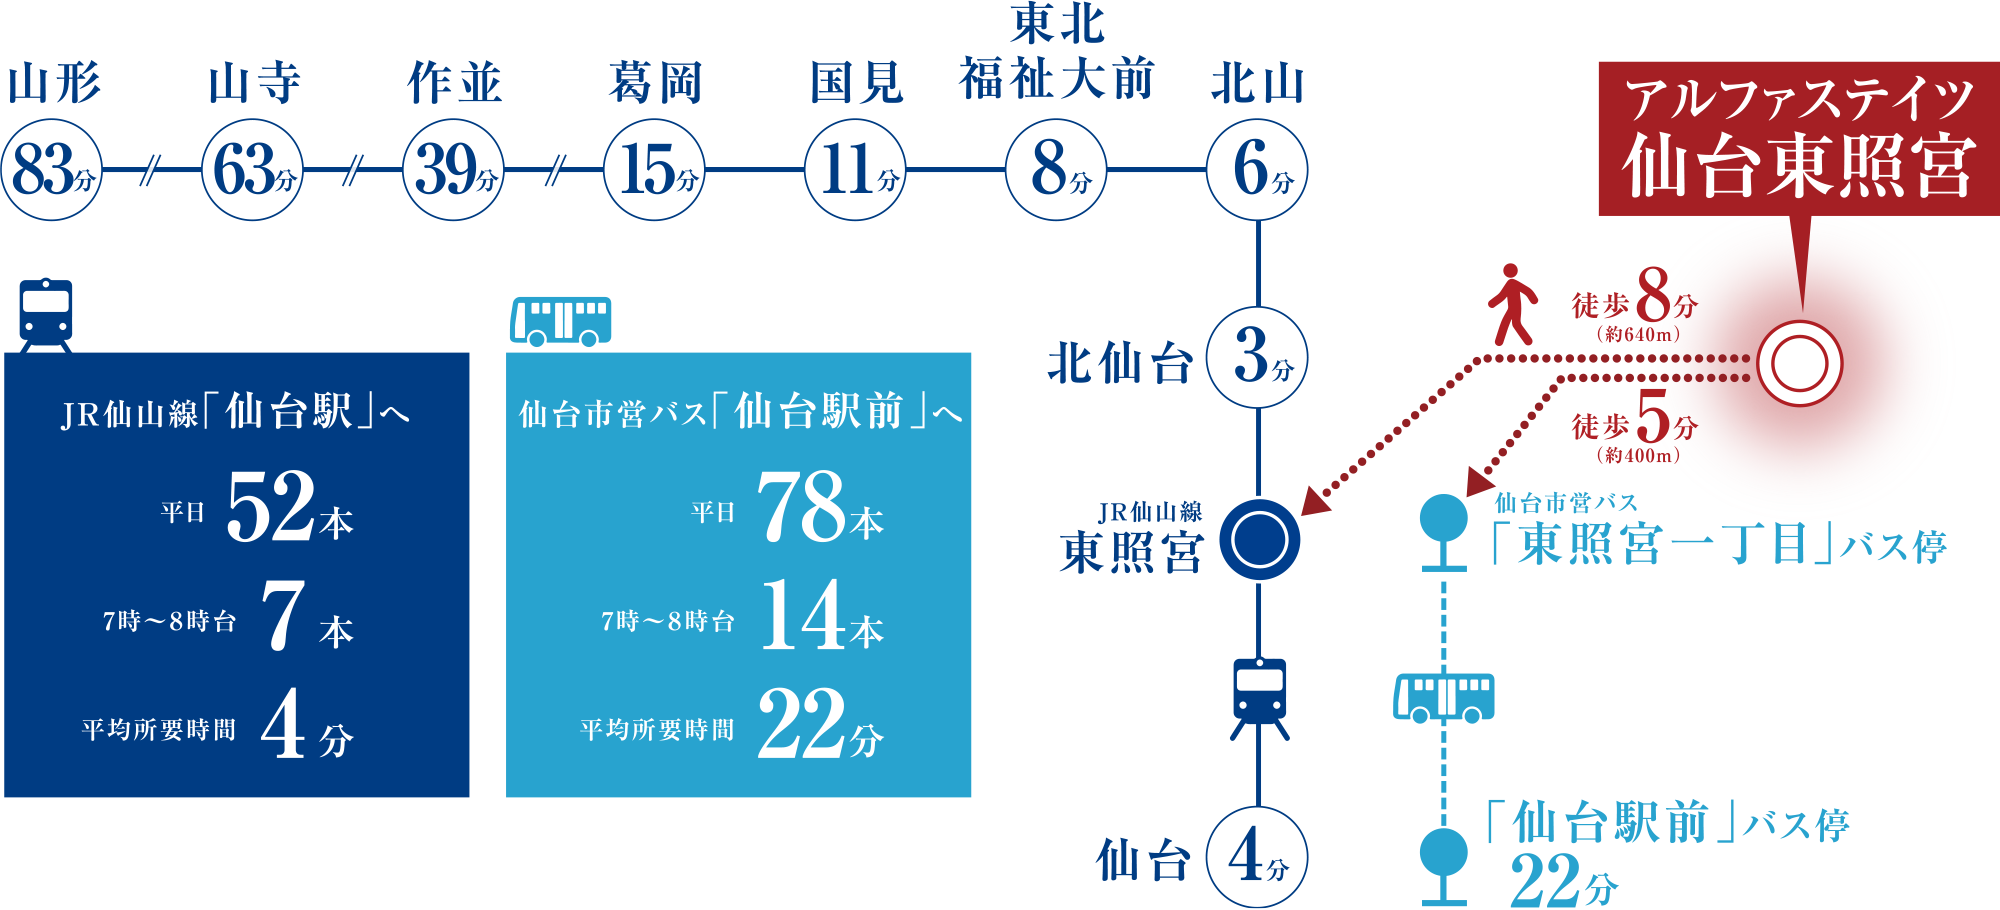 JR「仙台駅」へゆとりアクセス
JR仙台駅まで1駅12分。仙台市営バスで27分。